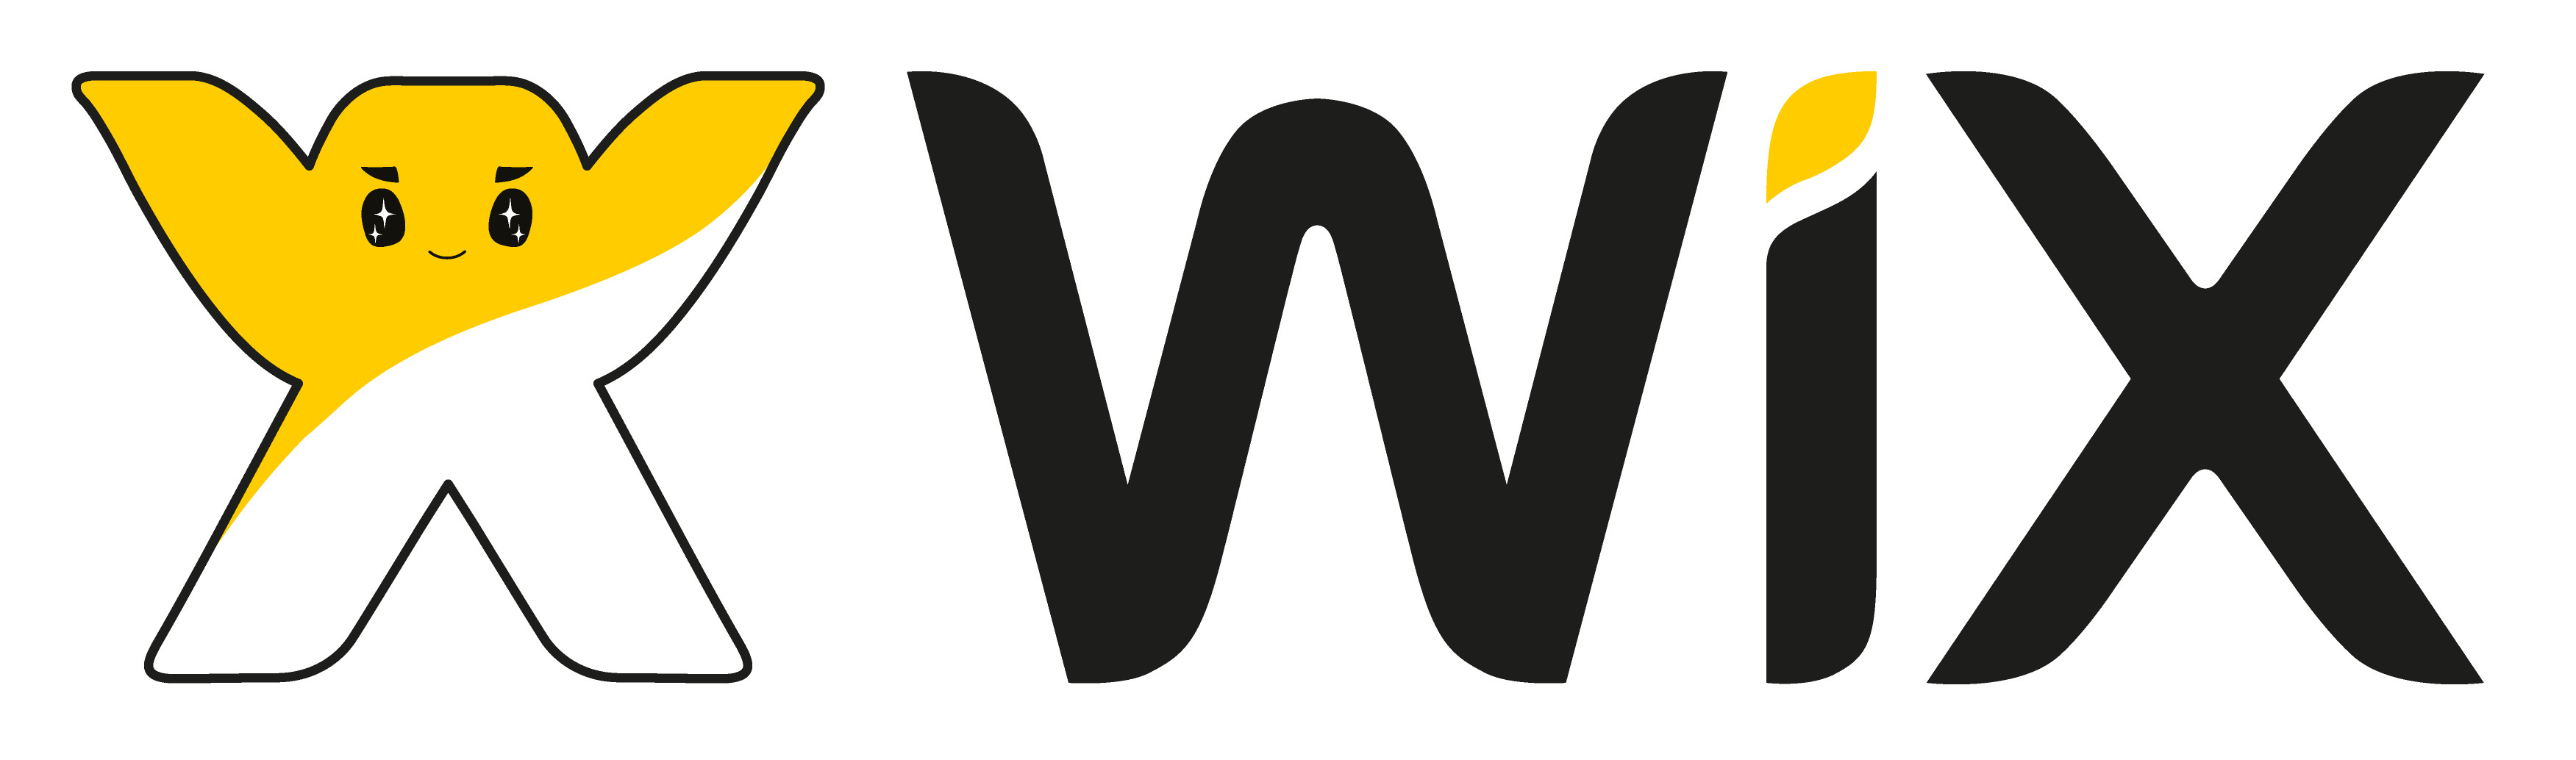  Wix.com Returns to 